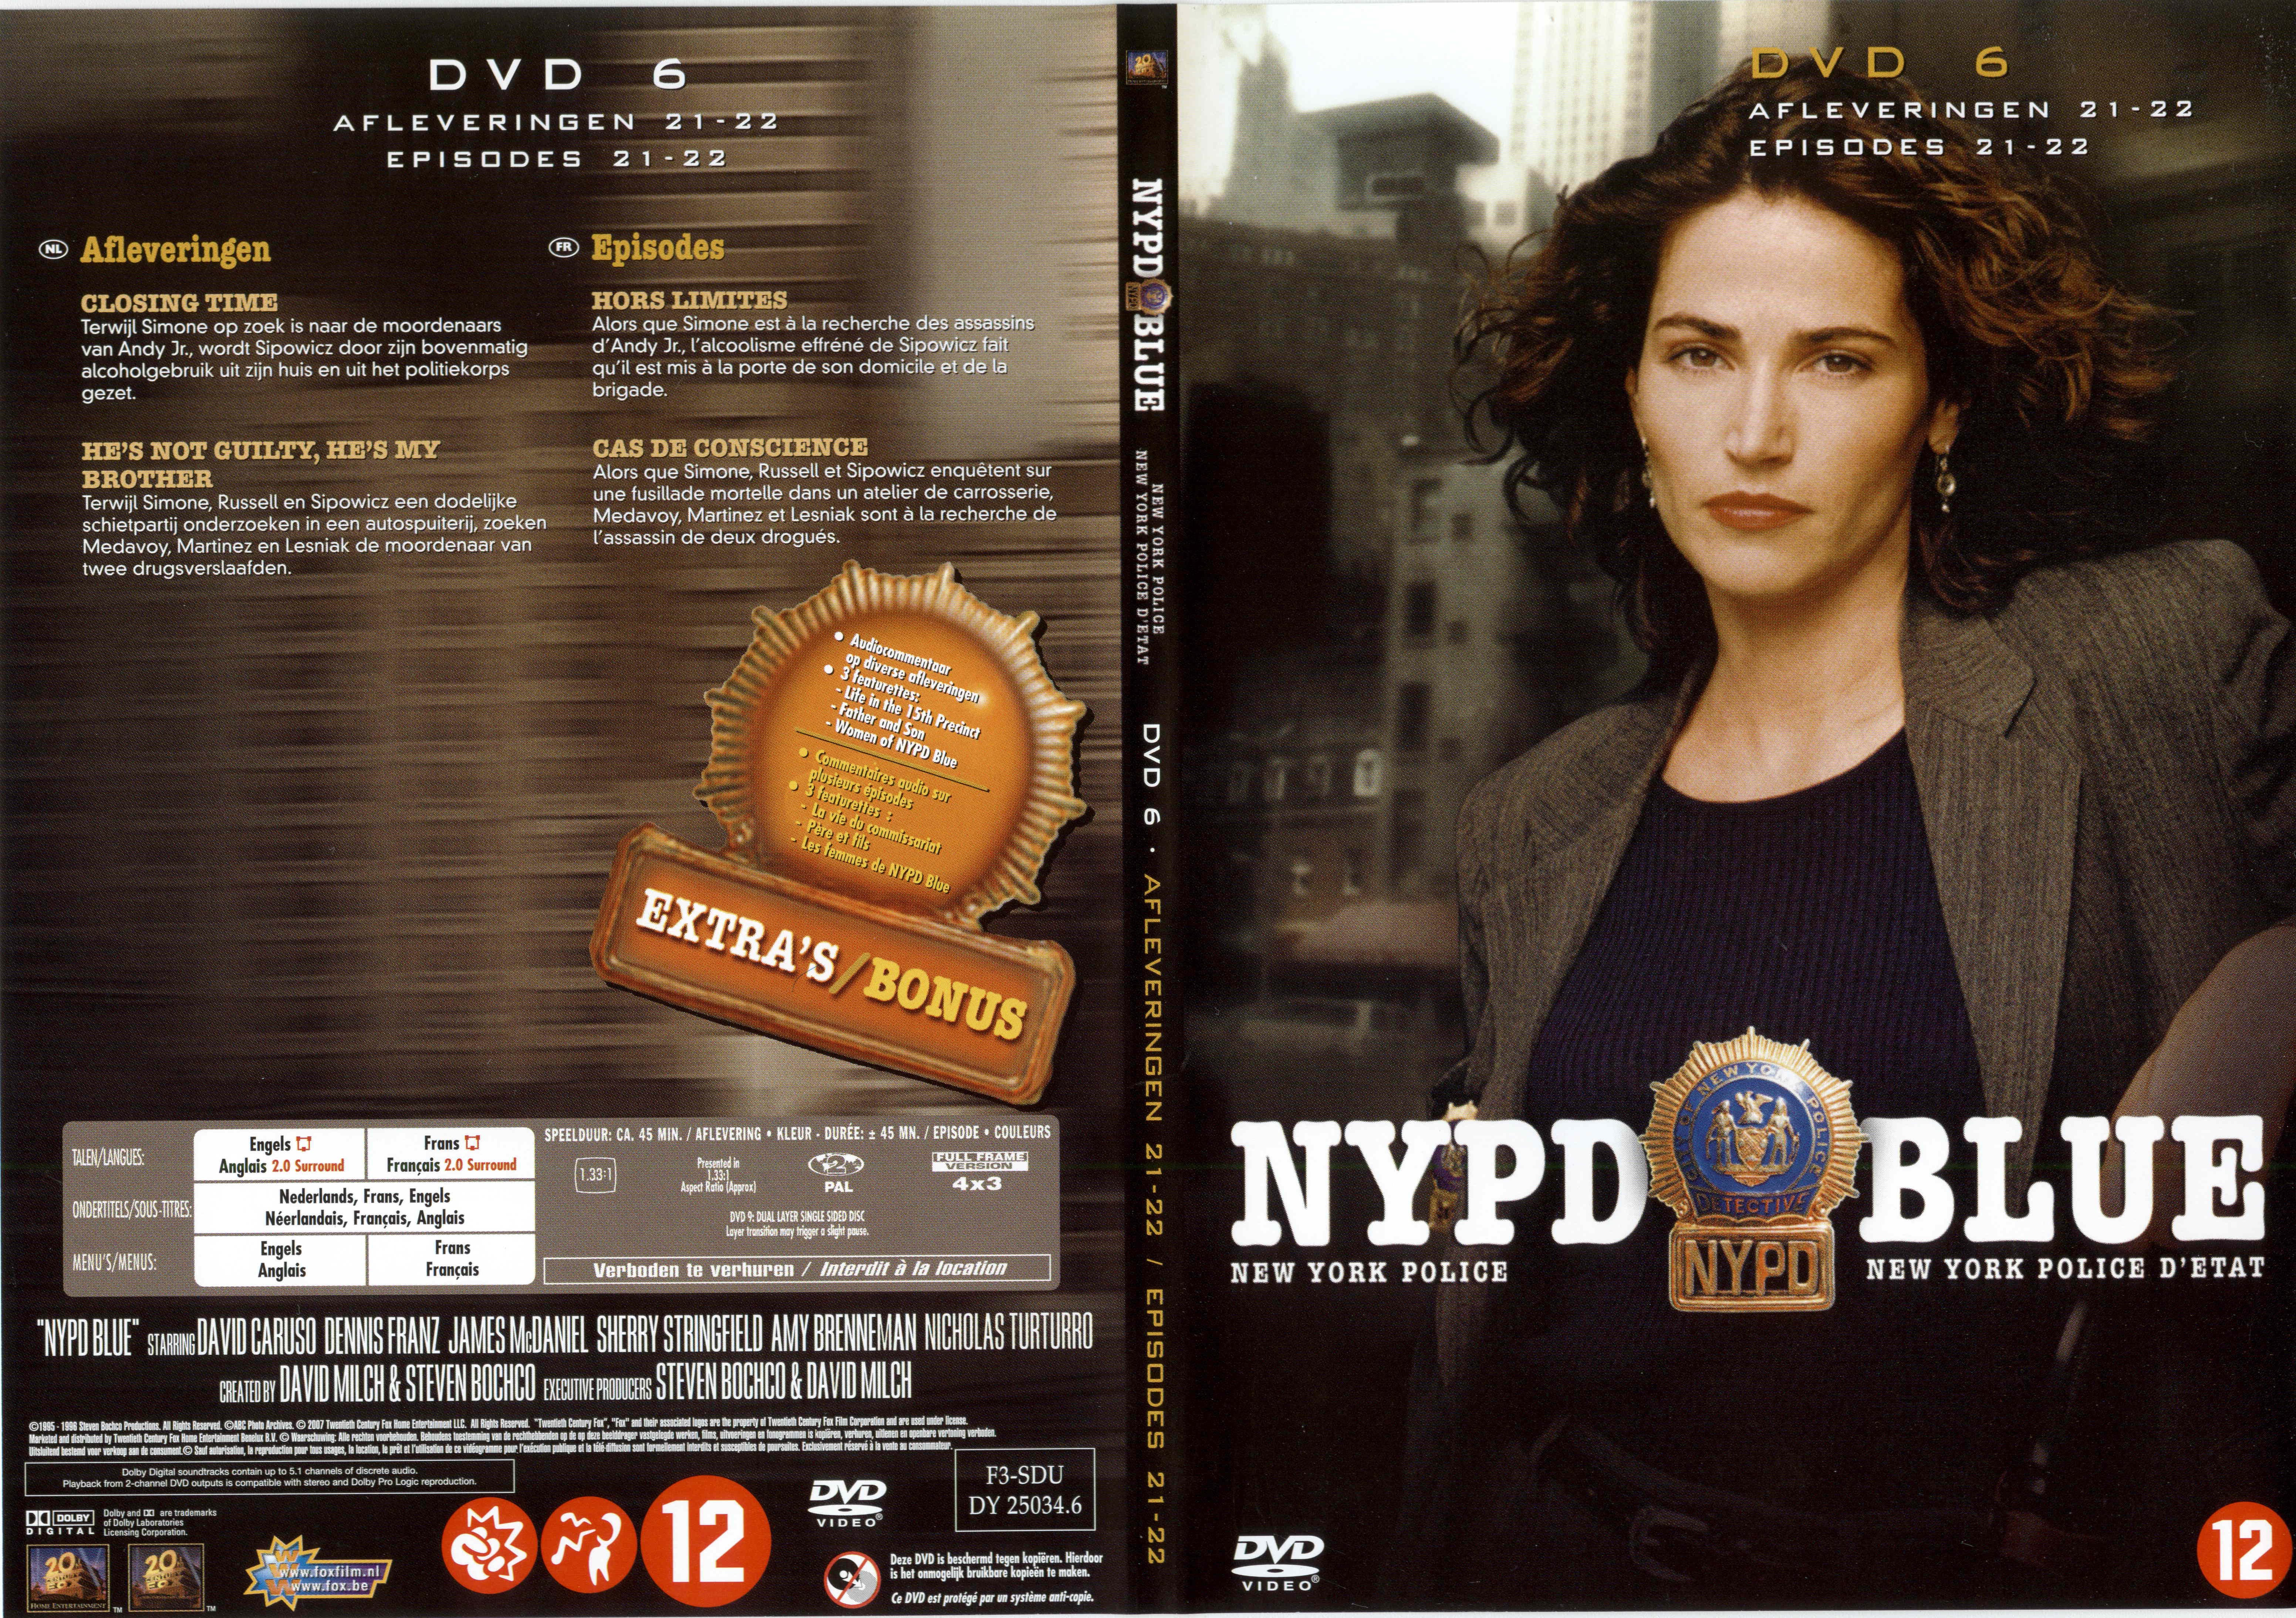 Jaquette DVD NYPD Blue saison 03 dvd 06